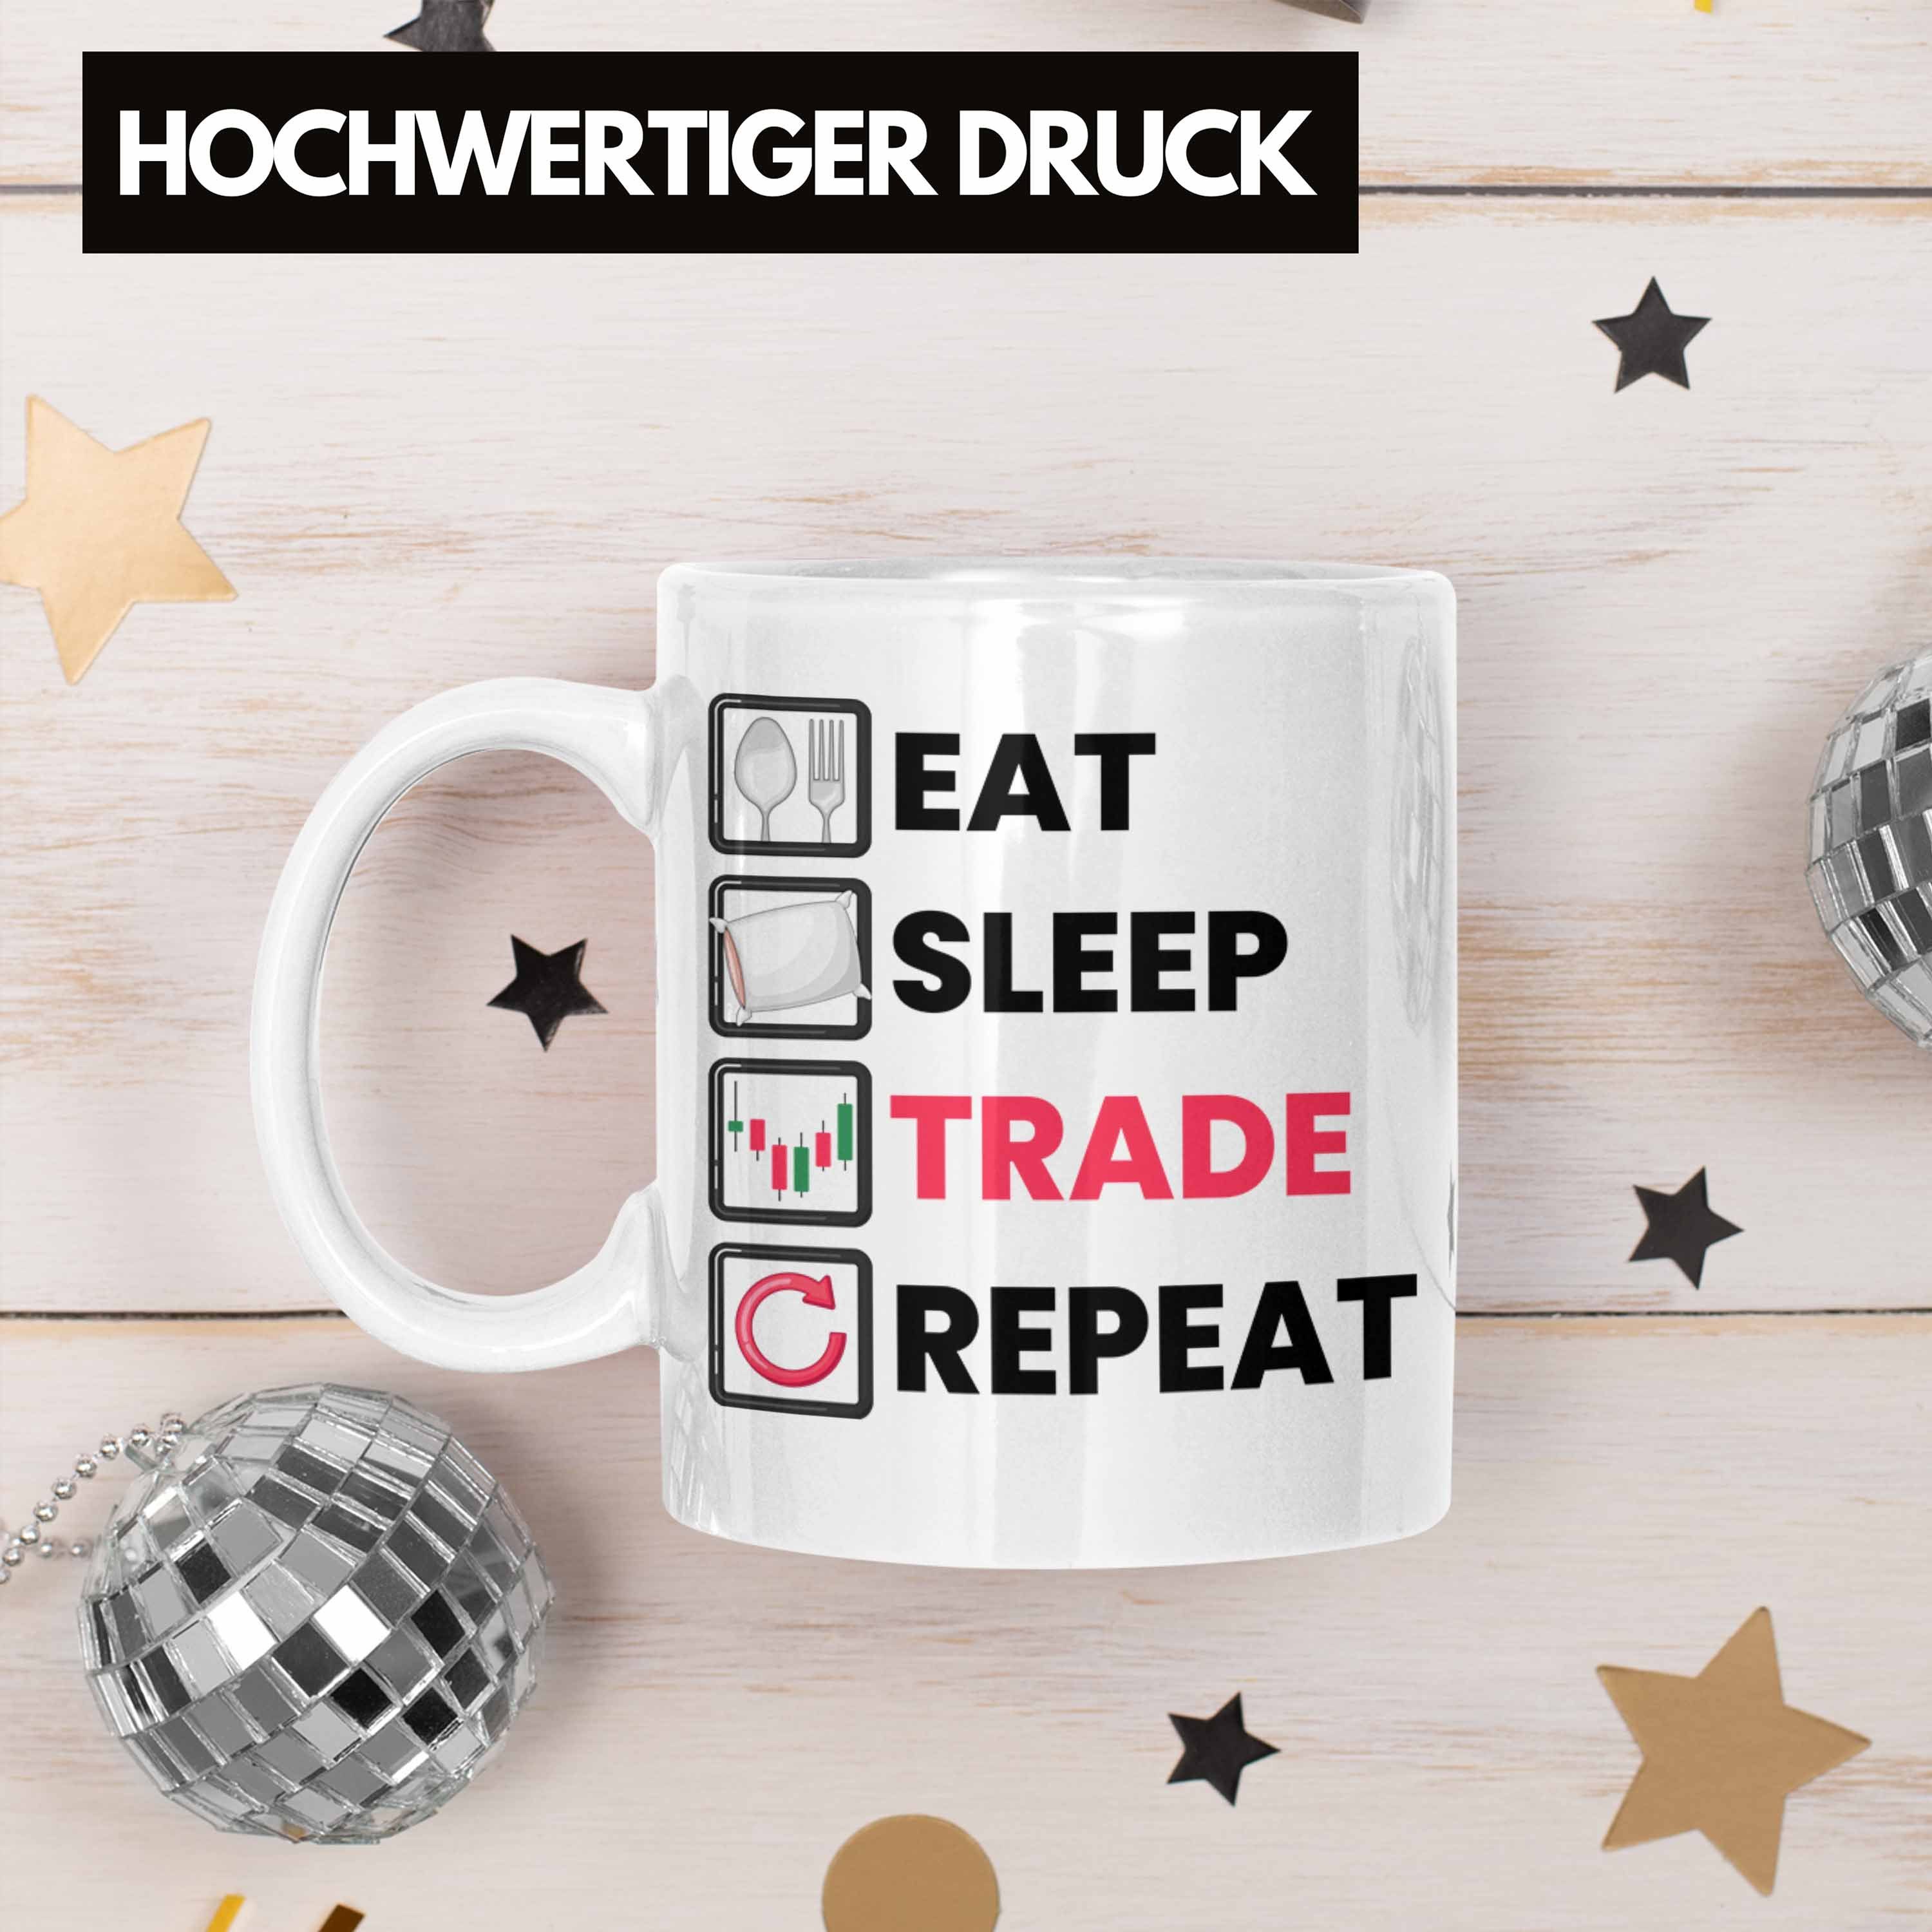 Trading "Eat Sleep Weiss Lustige Geschenkidee Tasse für Repeat" Inves Trade Trendation Tasse